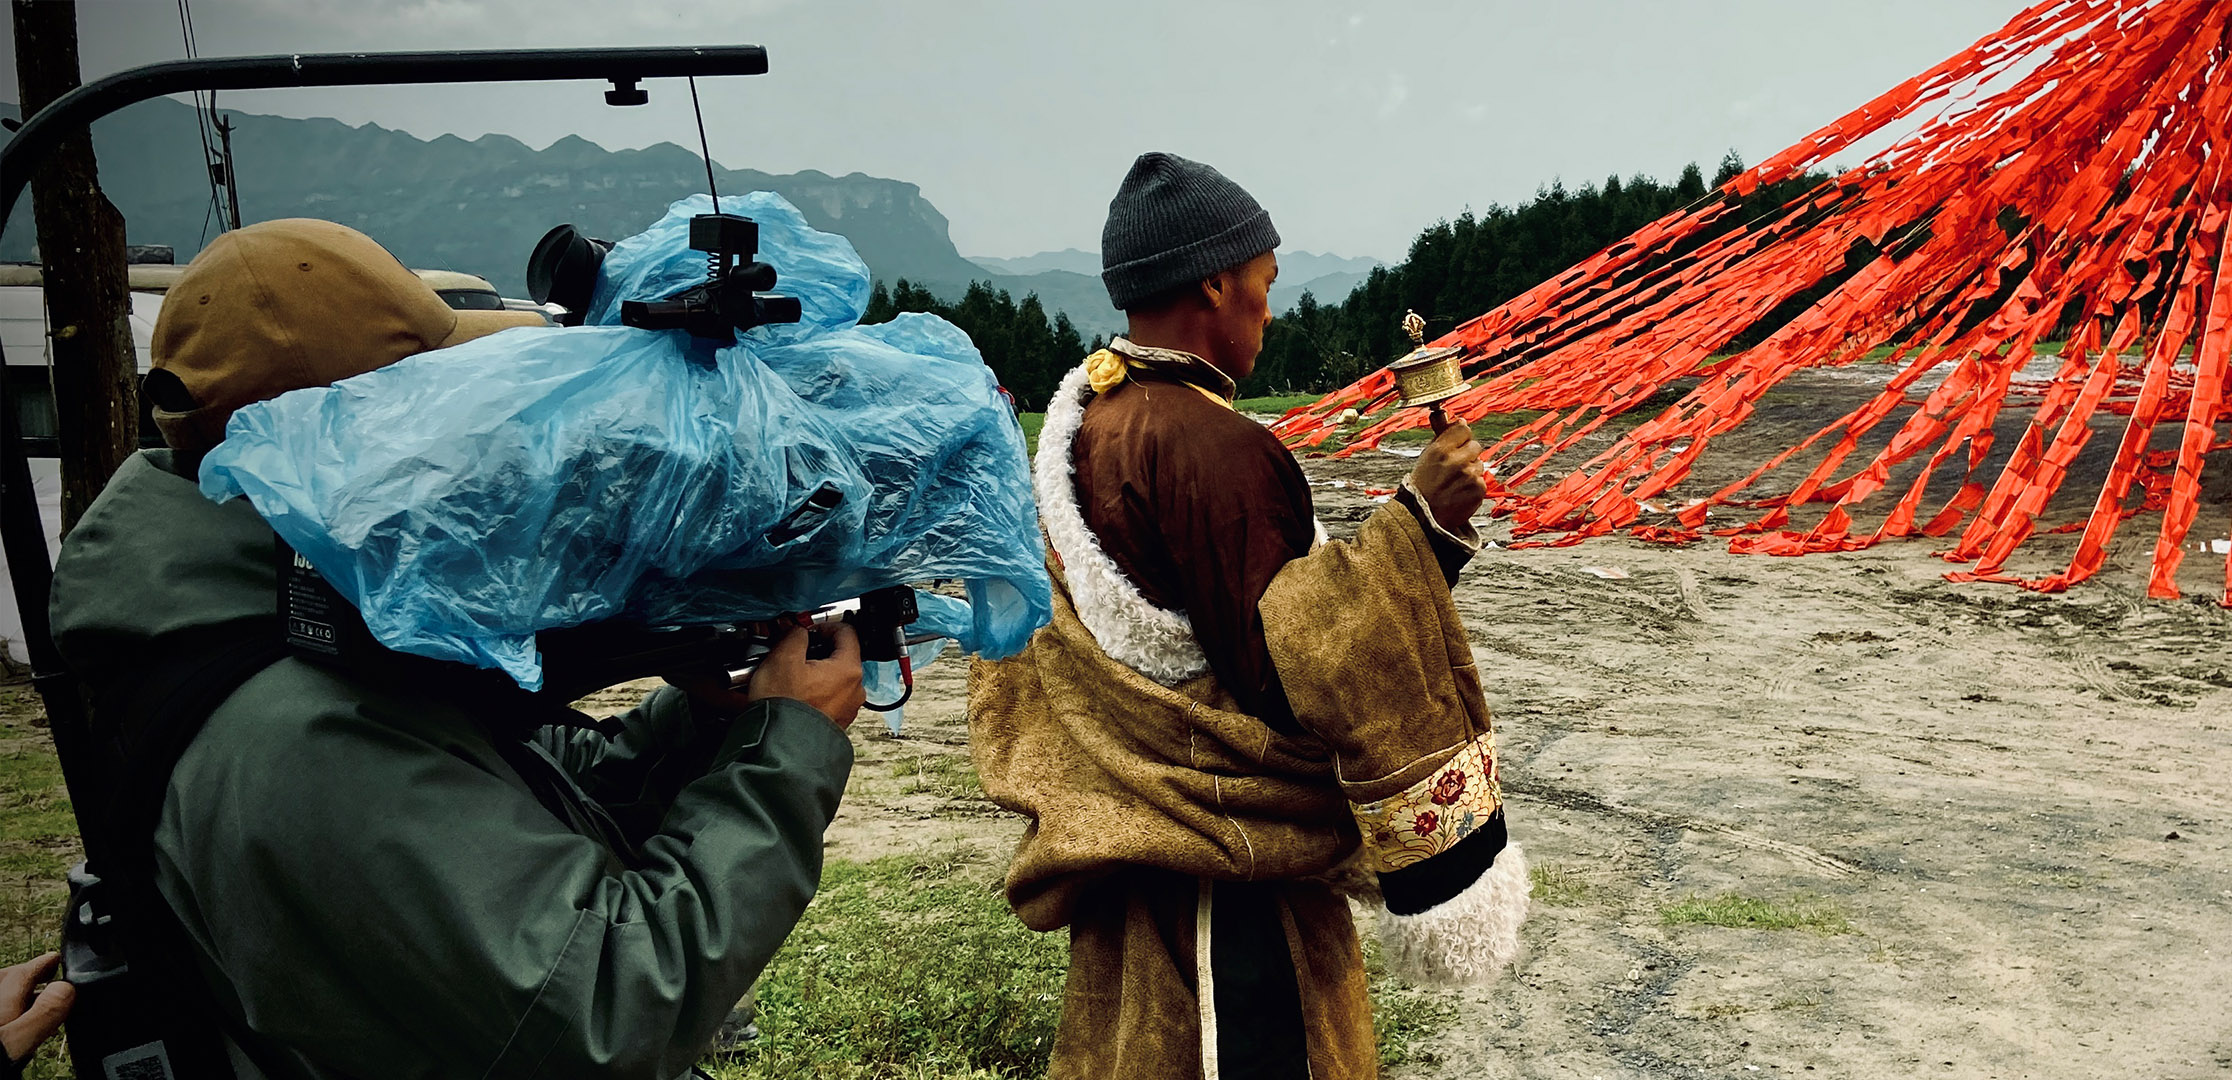 我们摄制组在高海拔西藏拍摄汽车广告现场花絮